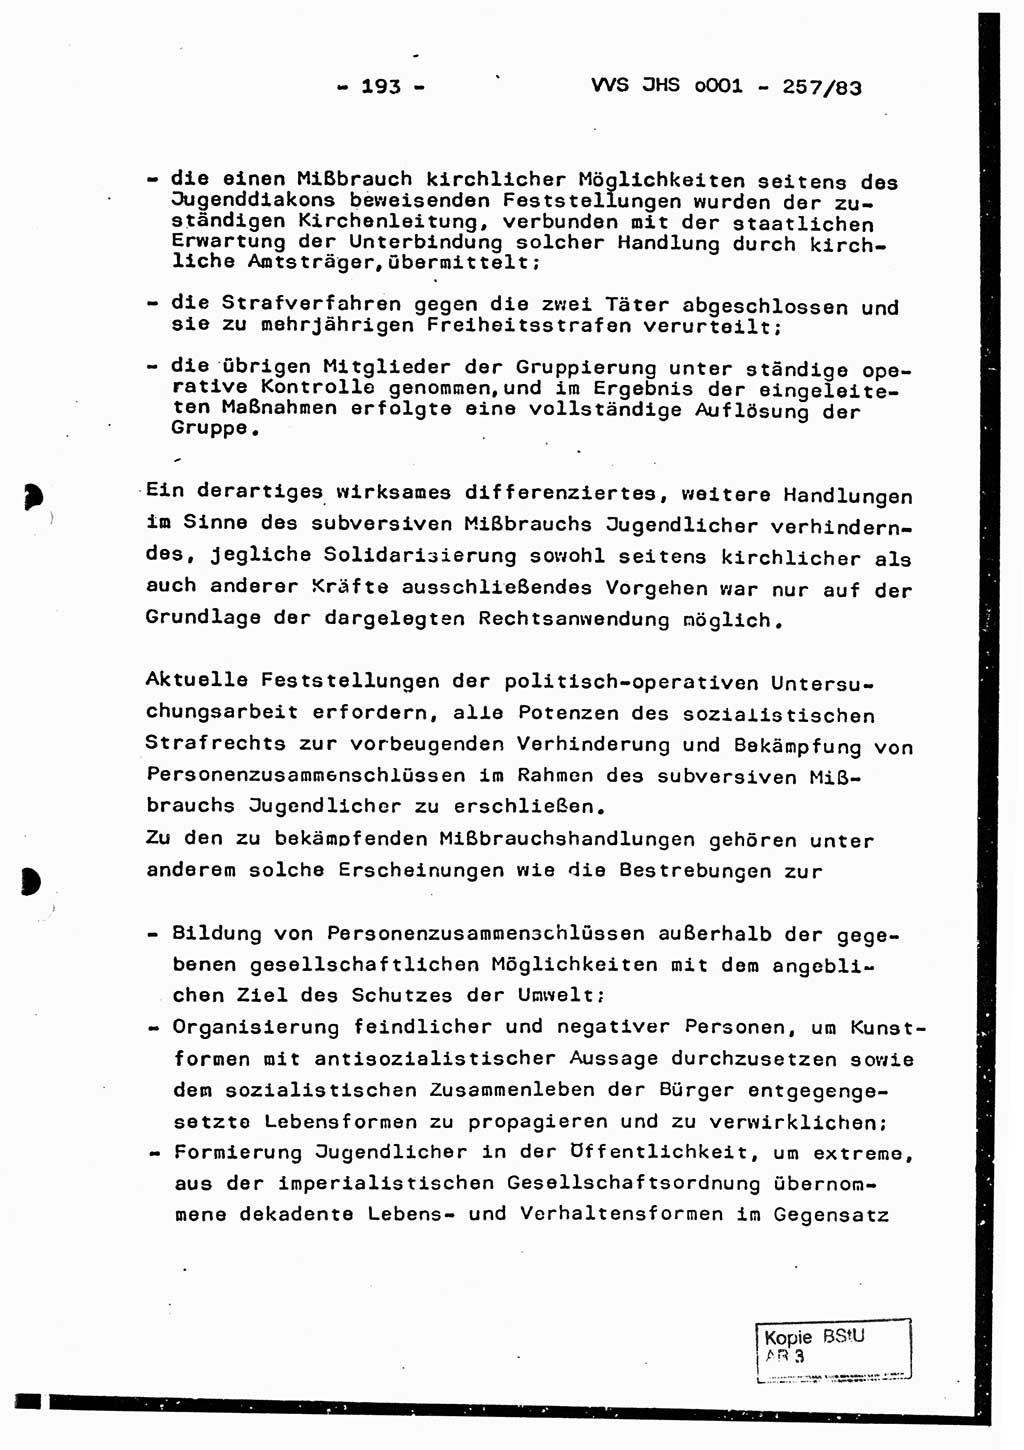 Dissertation, Oberst Helmut Lubas (BV Mdg.), Oberstleutnant Manfred Eschberger (HA IX), Oberleutnant Hans-Jürgen Ludwig (JHS), Ministerium für Staatssicherheit (MfS) [Deutsche Demokratische Republik (DDR)], Juristische Hochschule (JHS), Vertrauliche Verschlußsache (VVS) o001-257/83, Potsdam 1983, Seite 193 (Diss. MfS DDR JHS VVS o001-257/83 1983, S. 193)